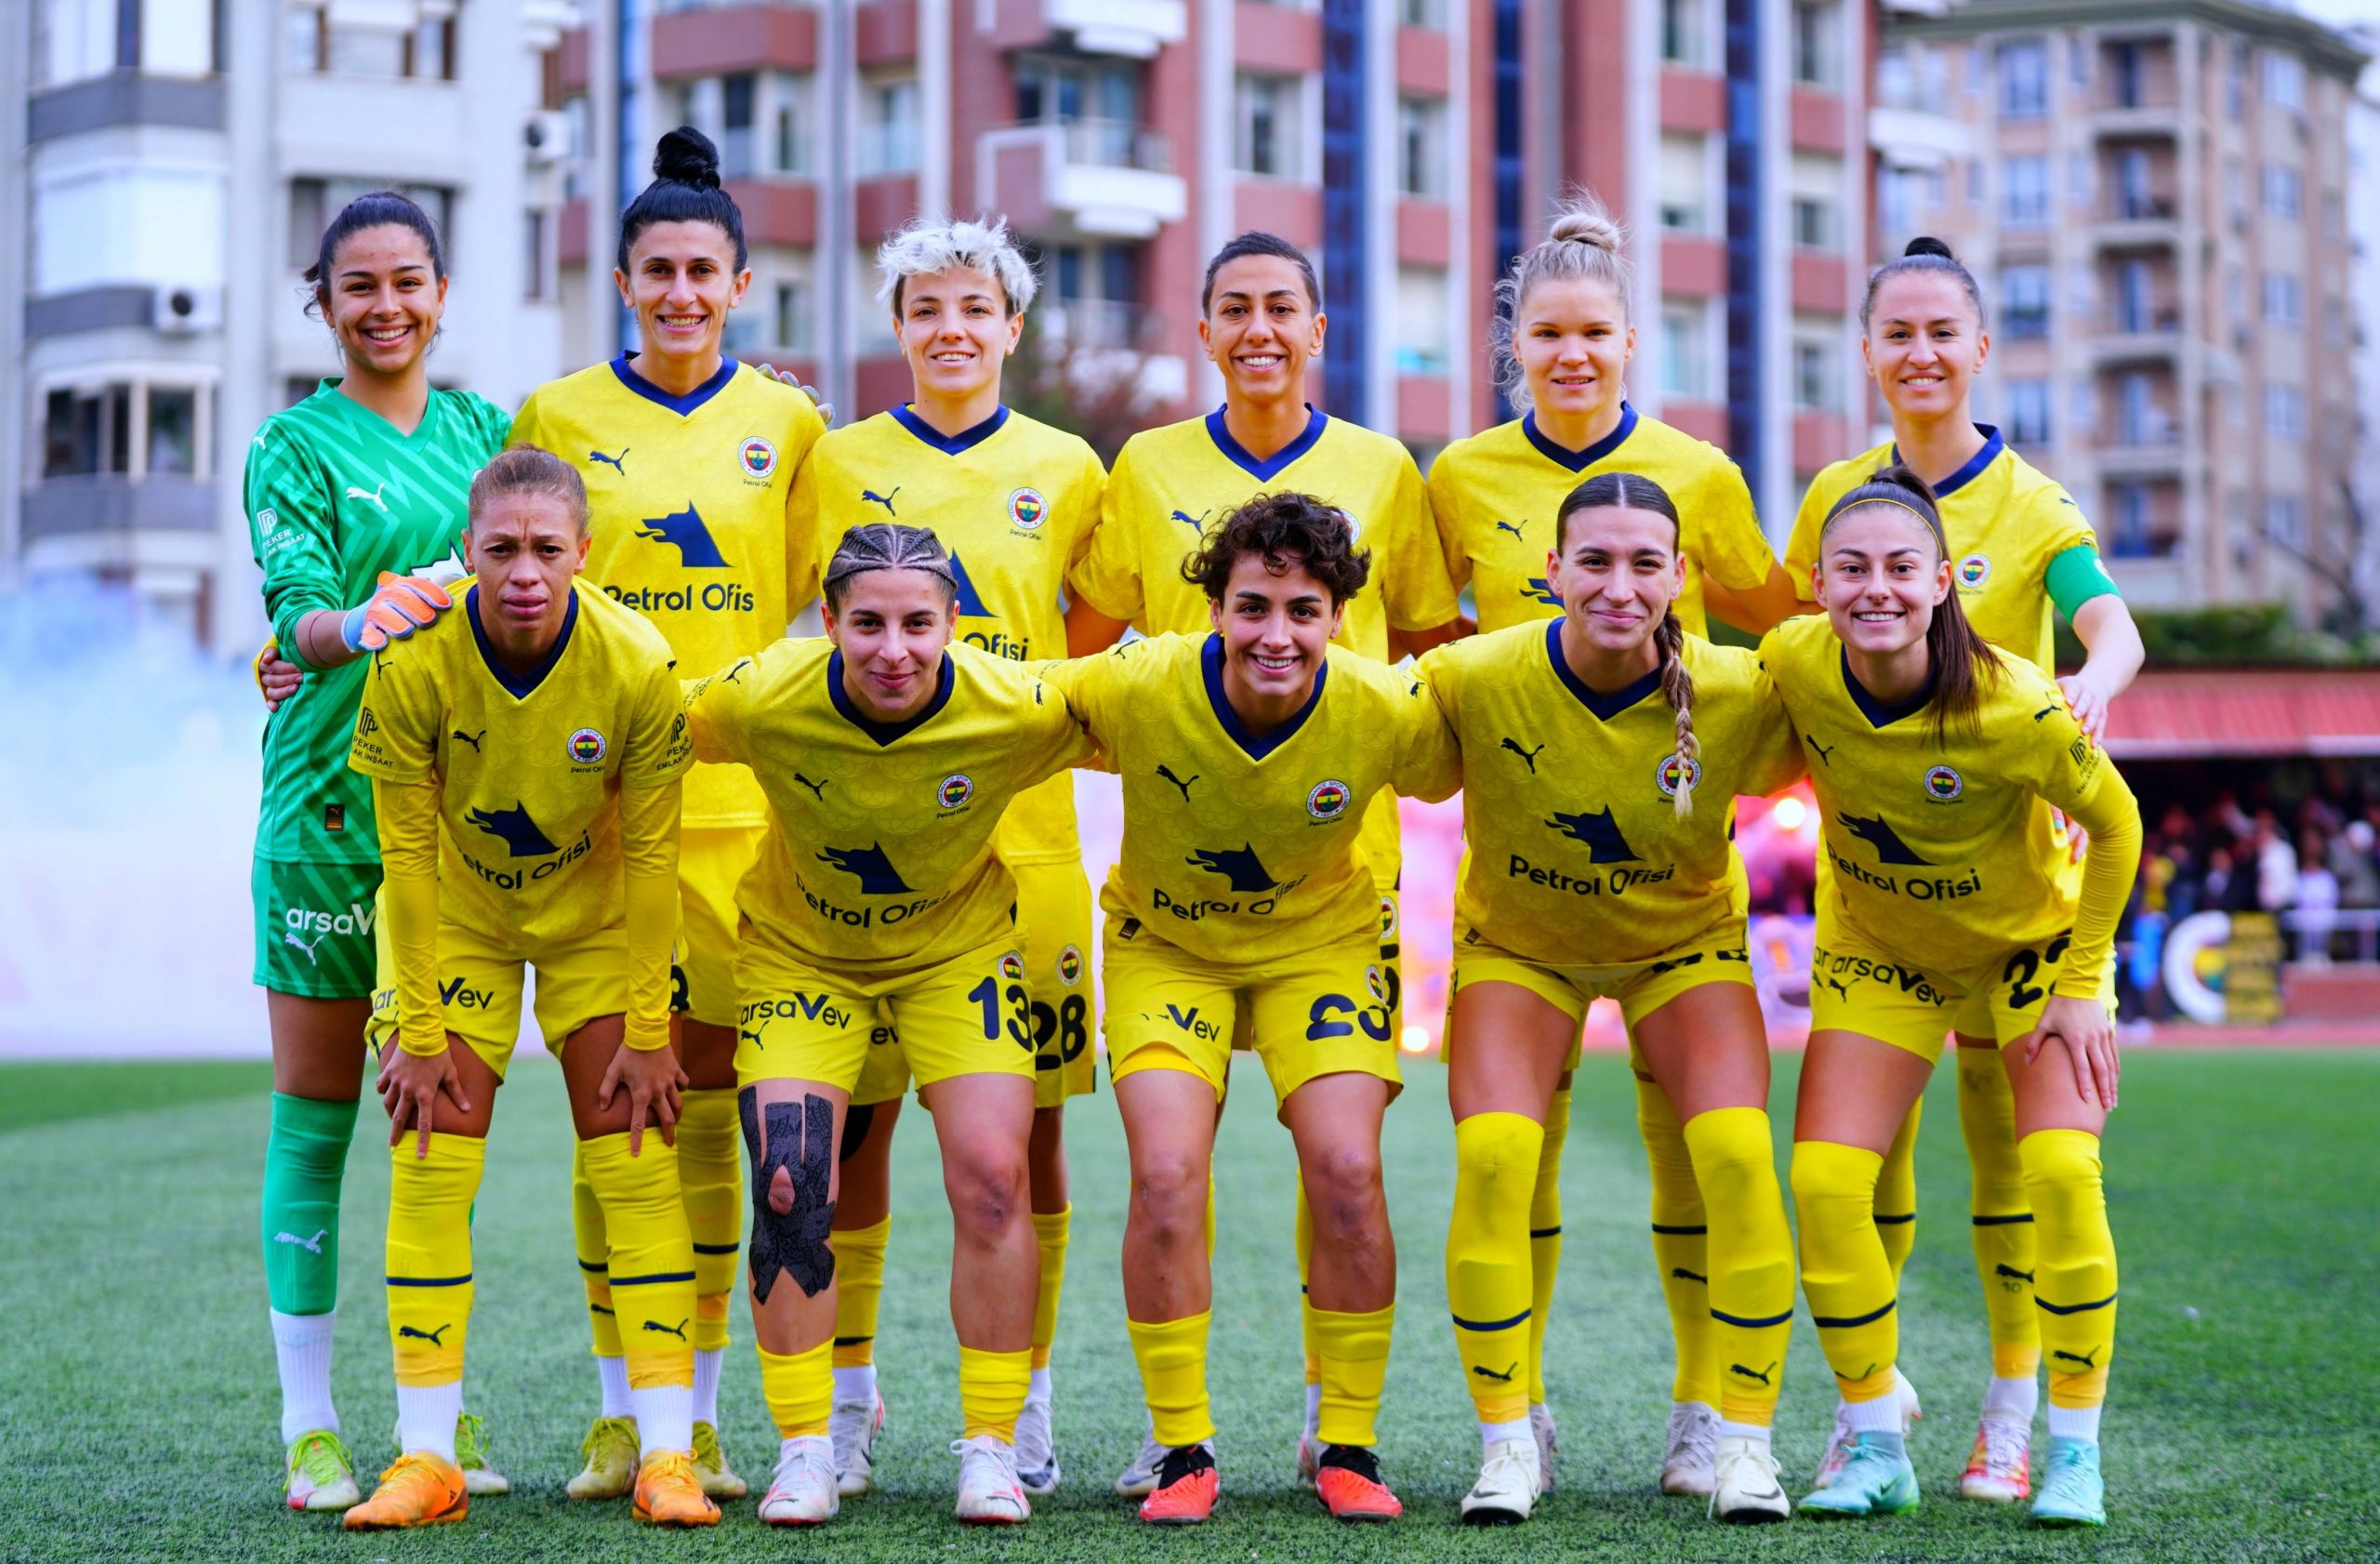 Turkcell Kadın Futbol Süper Ligi: Fenerbahçe: 2 – Karadeniz Ereğli Belediye Spor: 1